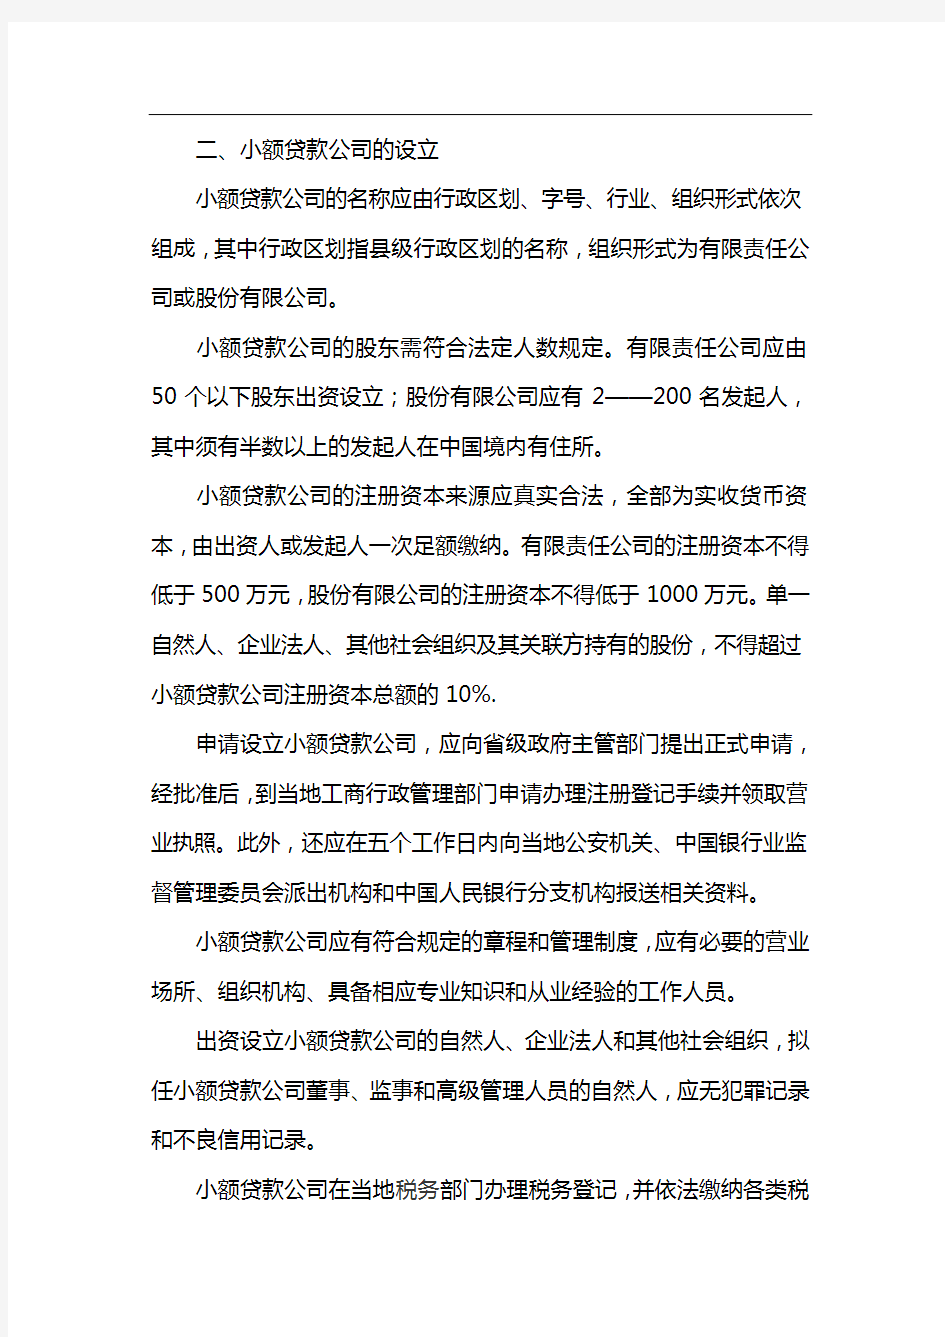 中国人民银行监督管理委员会、中国人民银行关于小额贷款公司的指导意见